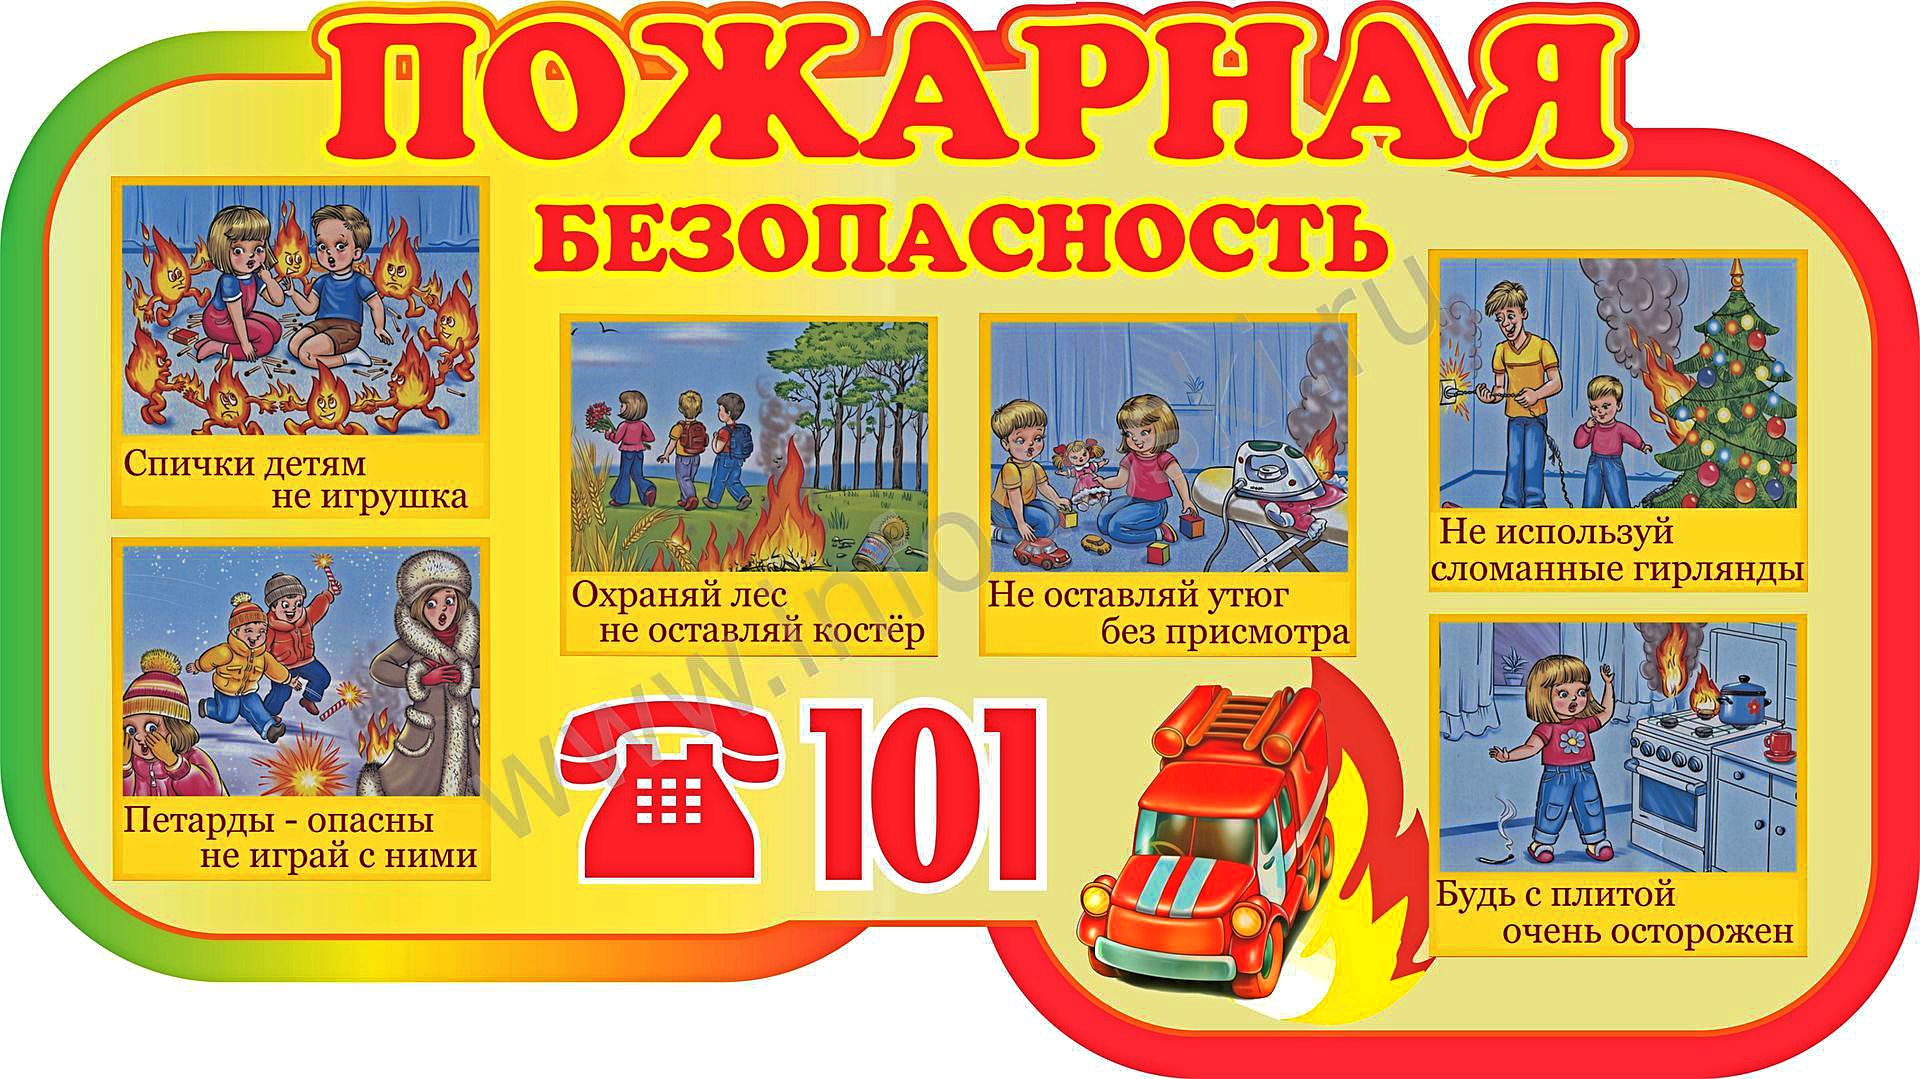 Плакат пожарного для детей. Пожарная безопасность для детей. Детям о правилах пожарной безопасности. Пожарная безопастность.